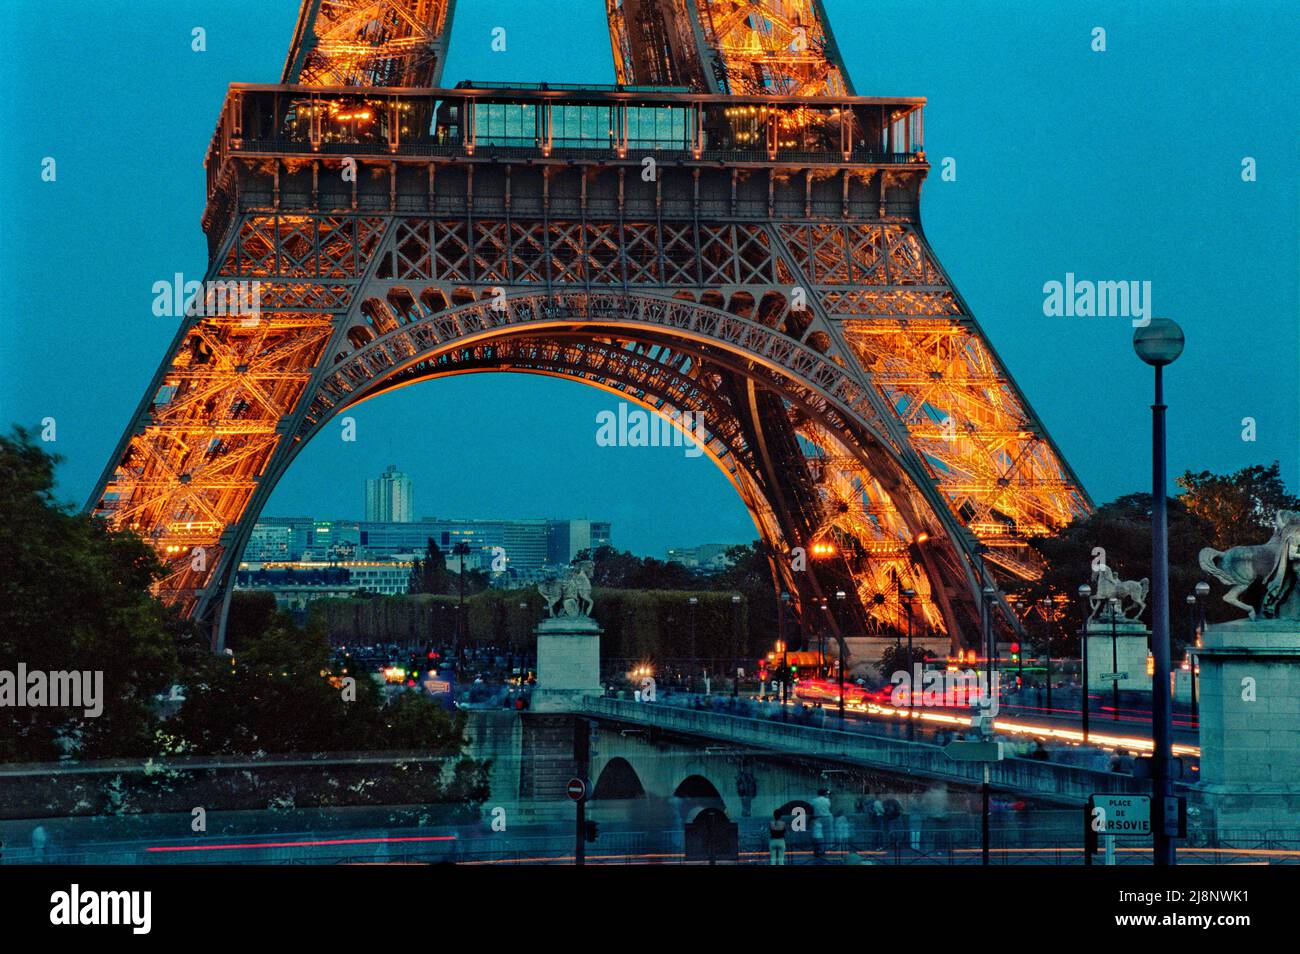 La Torre Eiffel vista desde el otro lado del río Sena: Los visitantes deambulan por debajo de la Torre y cruzando pont d’Iéna en una tarde de verano temprano. Foto de stock